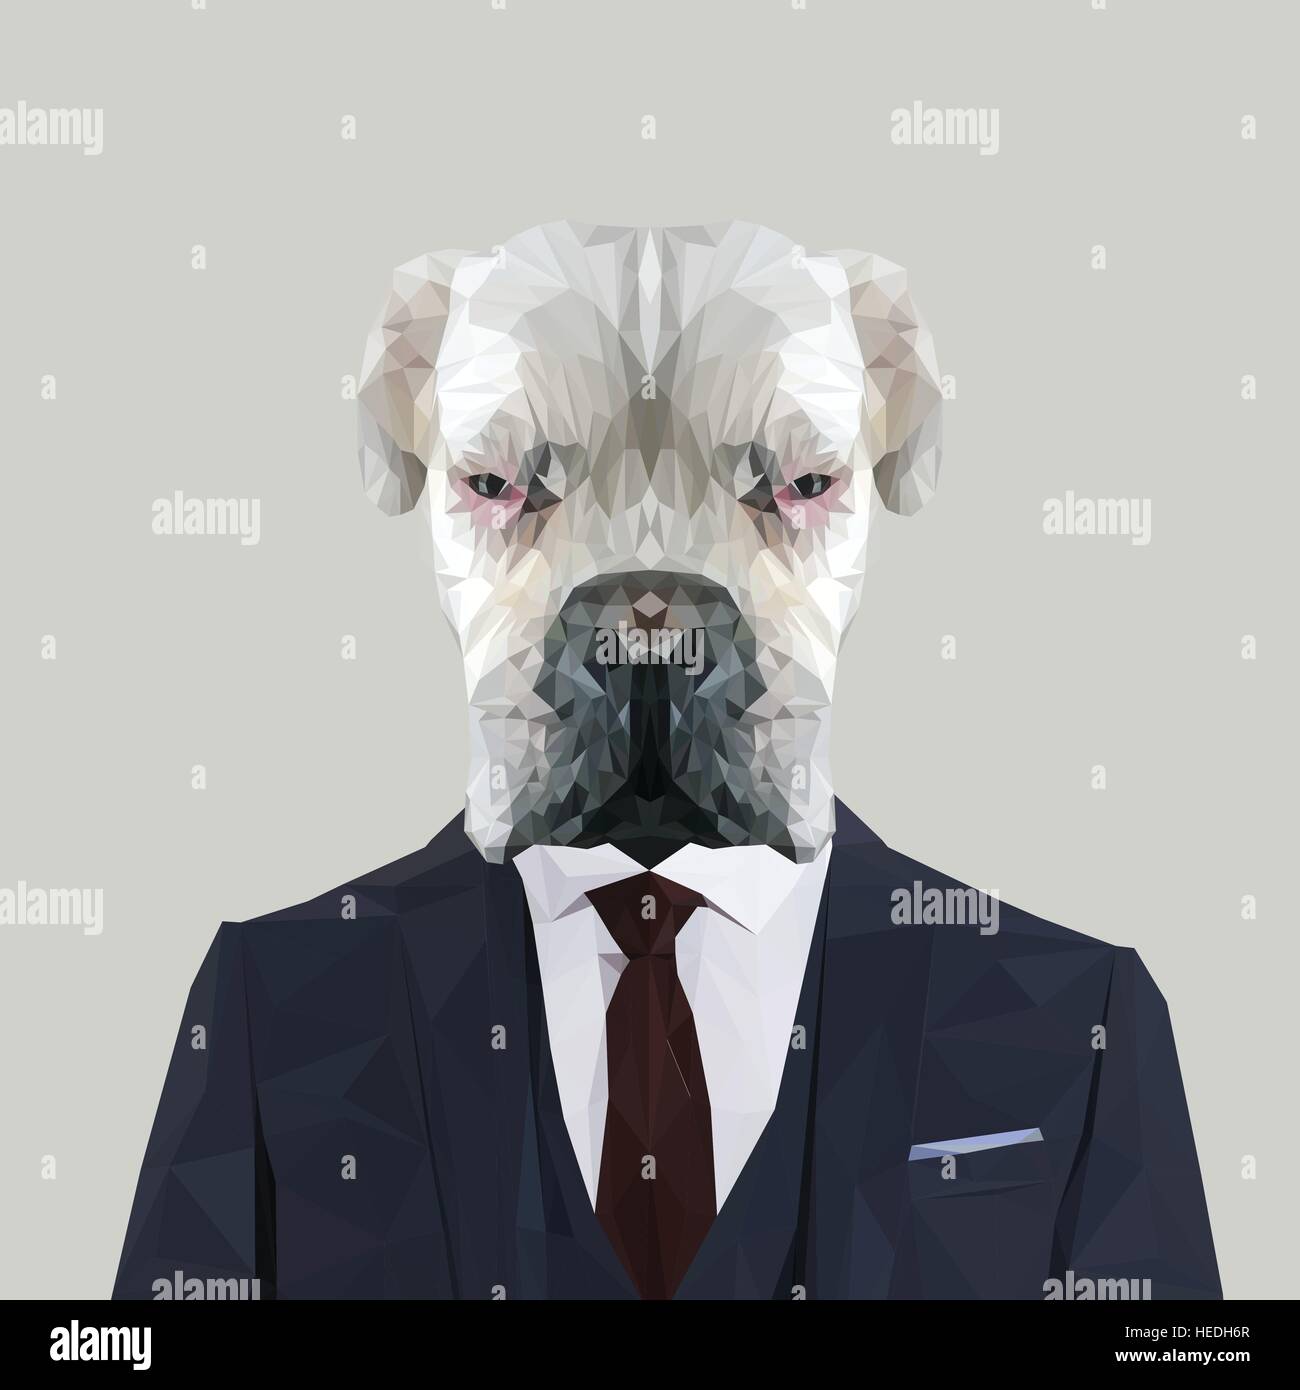 Blanco Boxer Albino dog animal vestido con traje de color azul marino con corbata roja. Hombre de negocios. Ilustración vectorial. Ilustración del Vector